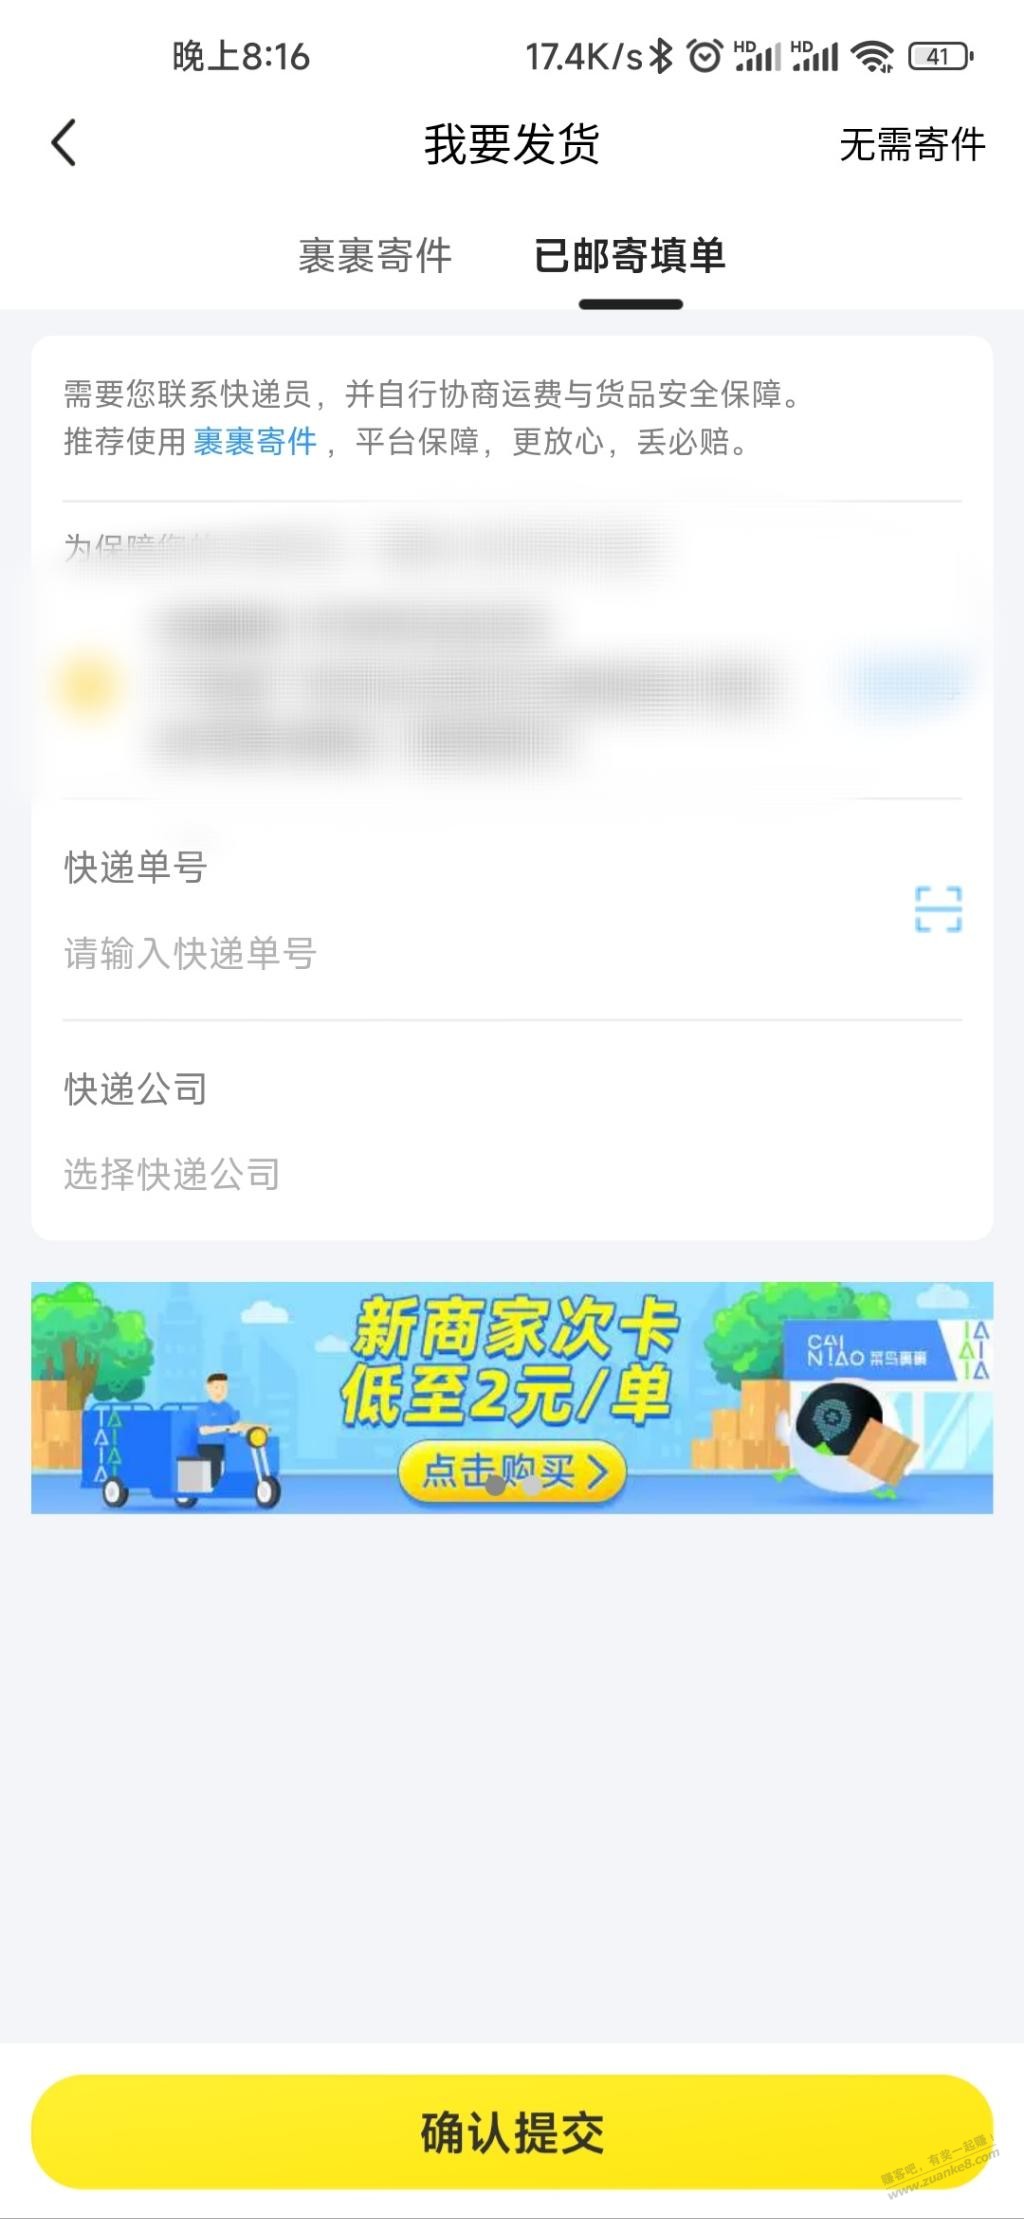 菜鸟新商家19.9/10次-惠小助(52huixz.com)